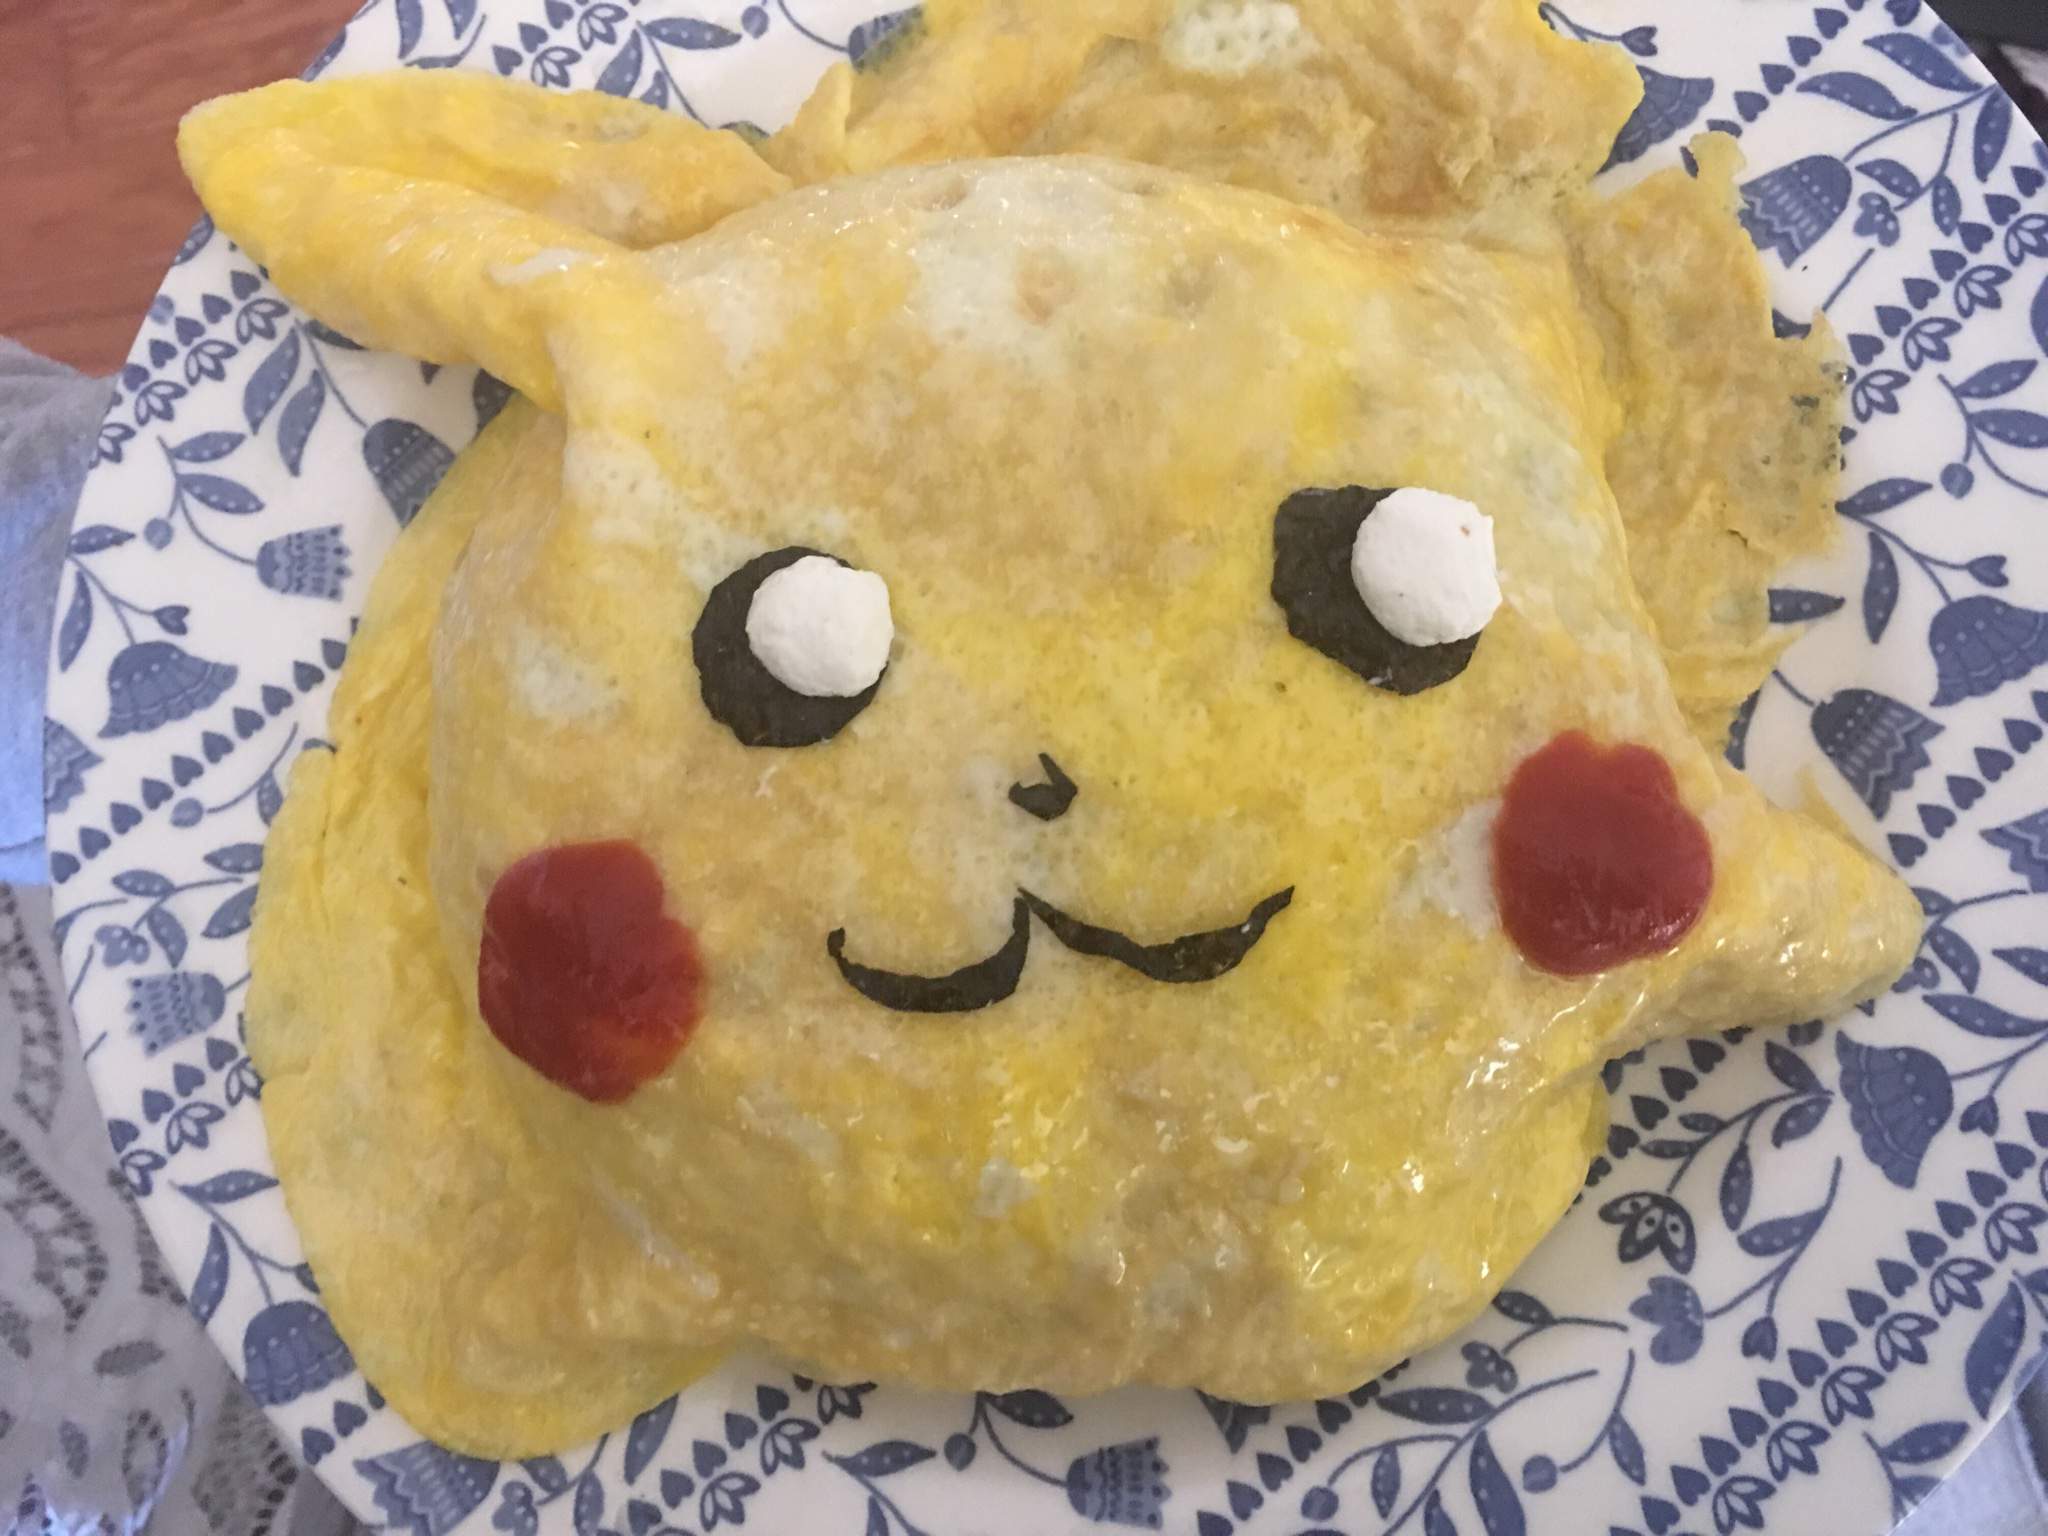 The Pikachu omelette | Pokémon Amino